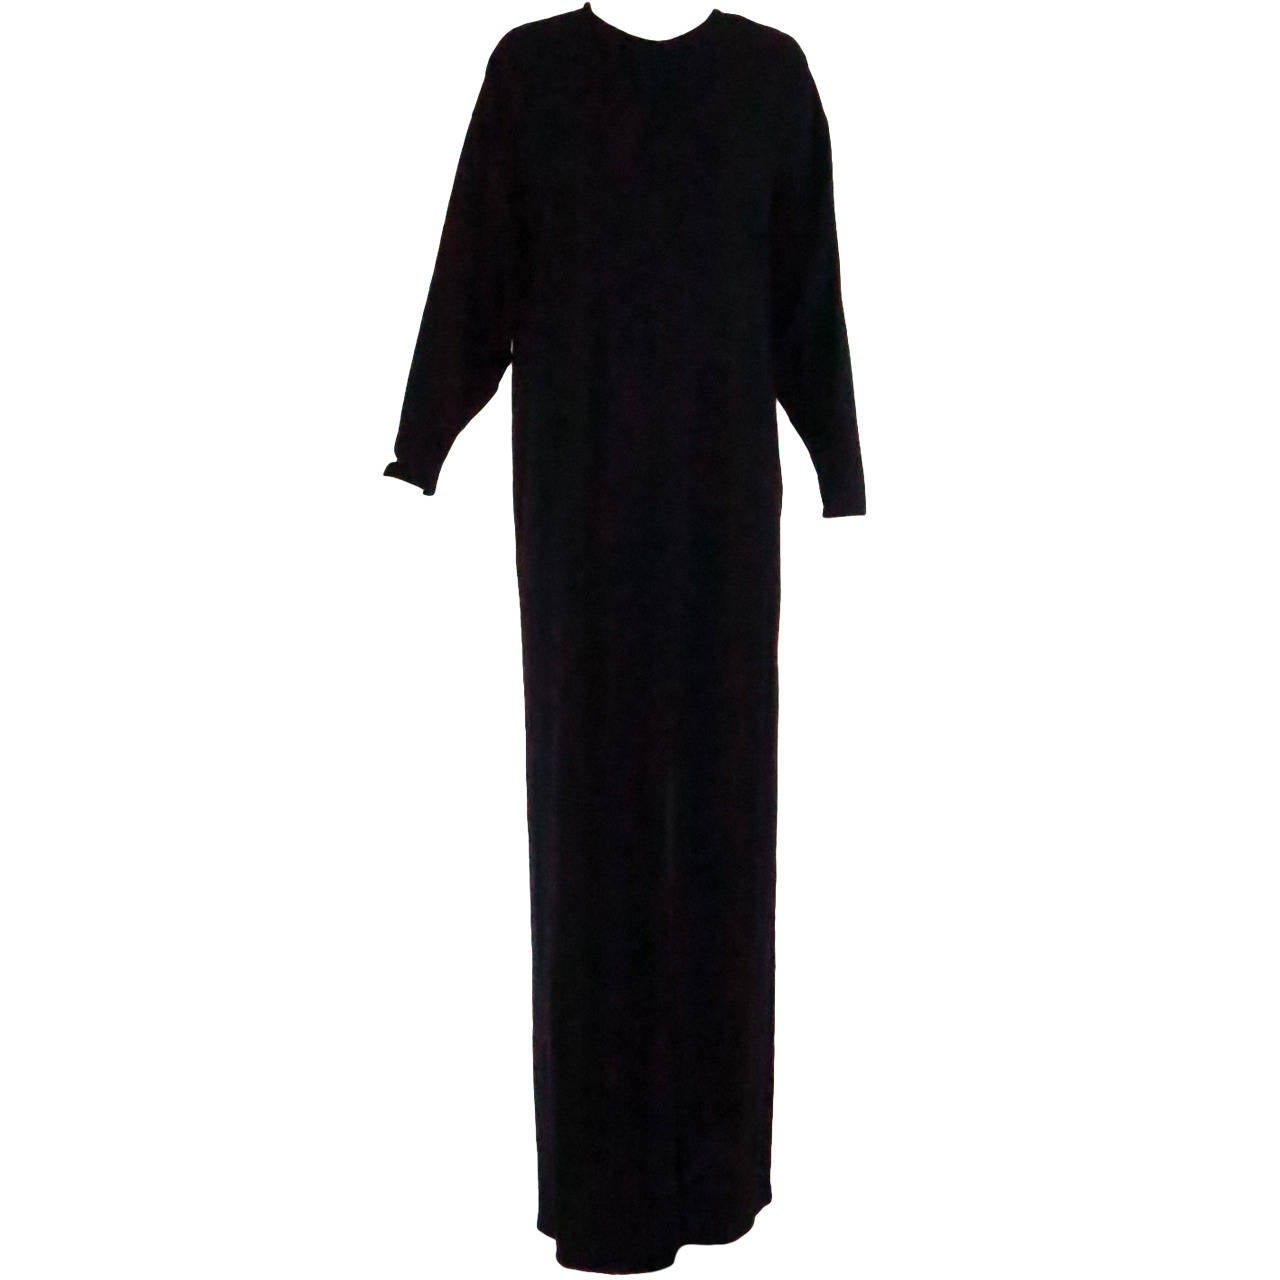 1970s Geoffrey Beene black fine wool knit maxi dress unworn